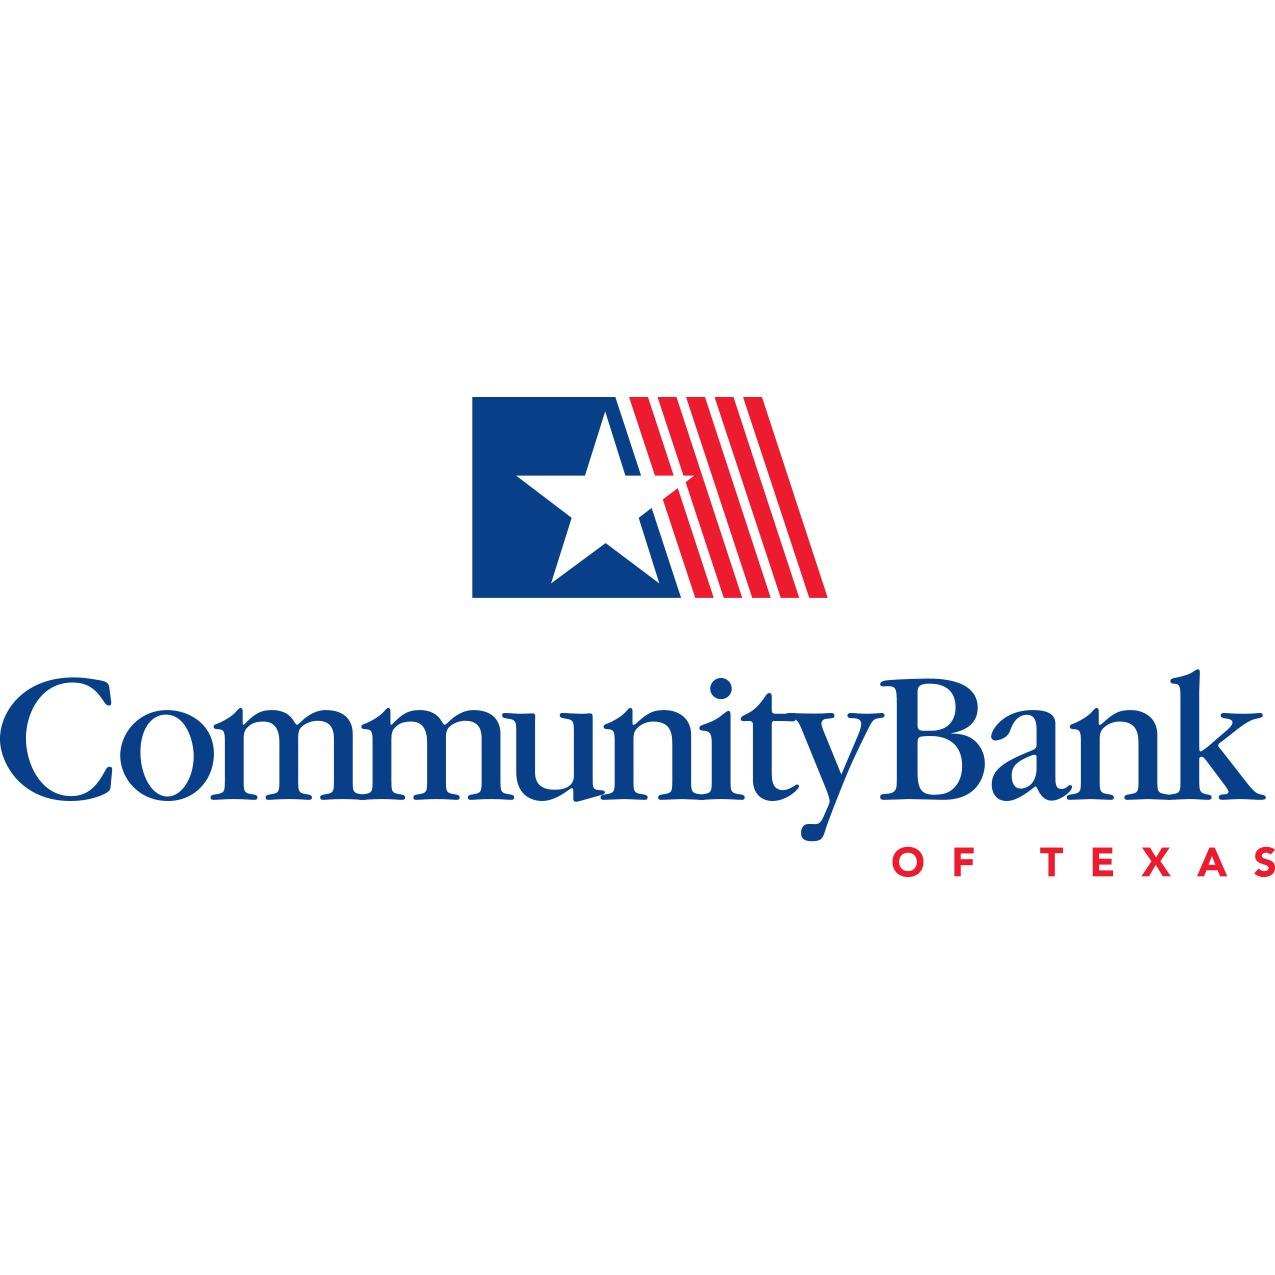 CommunityBank of Texas